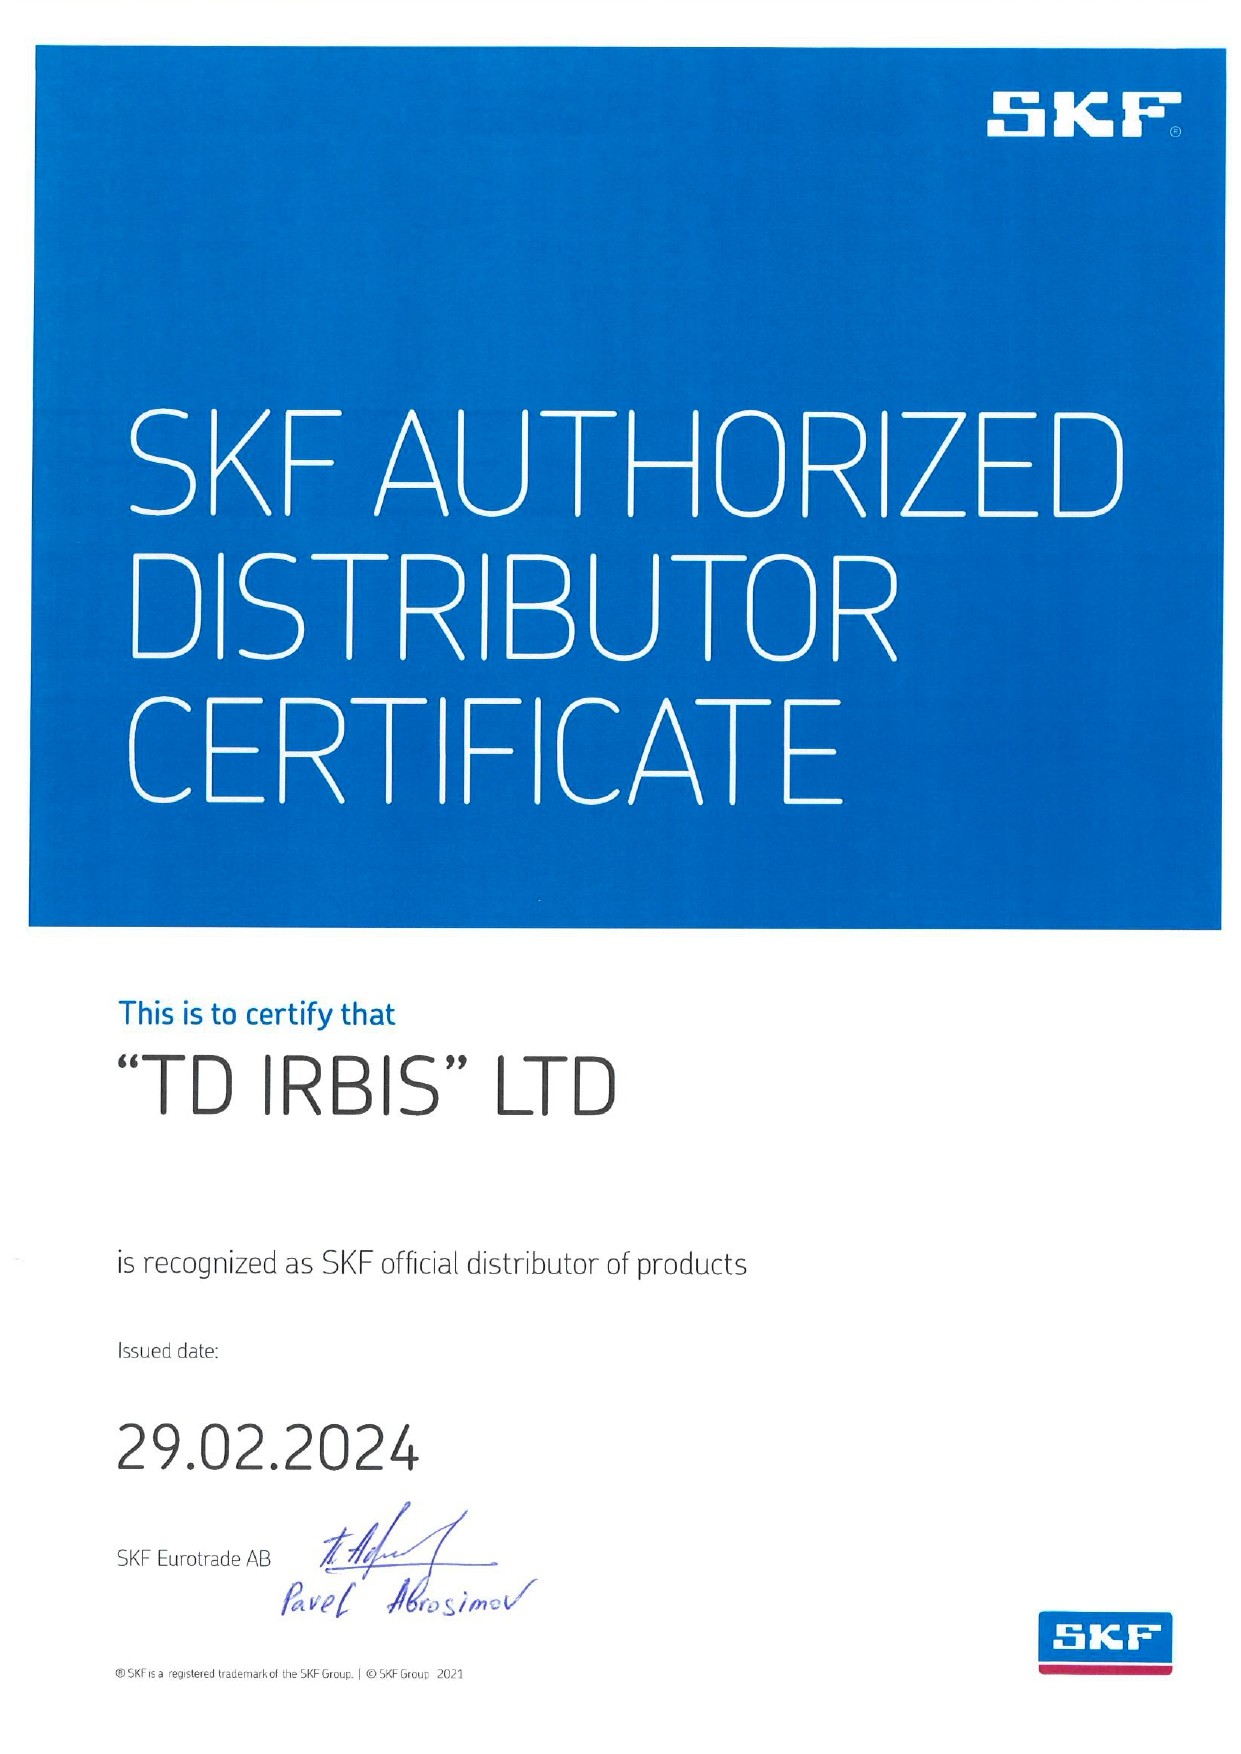 Сертифікат дистрибуції СКФ Україна